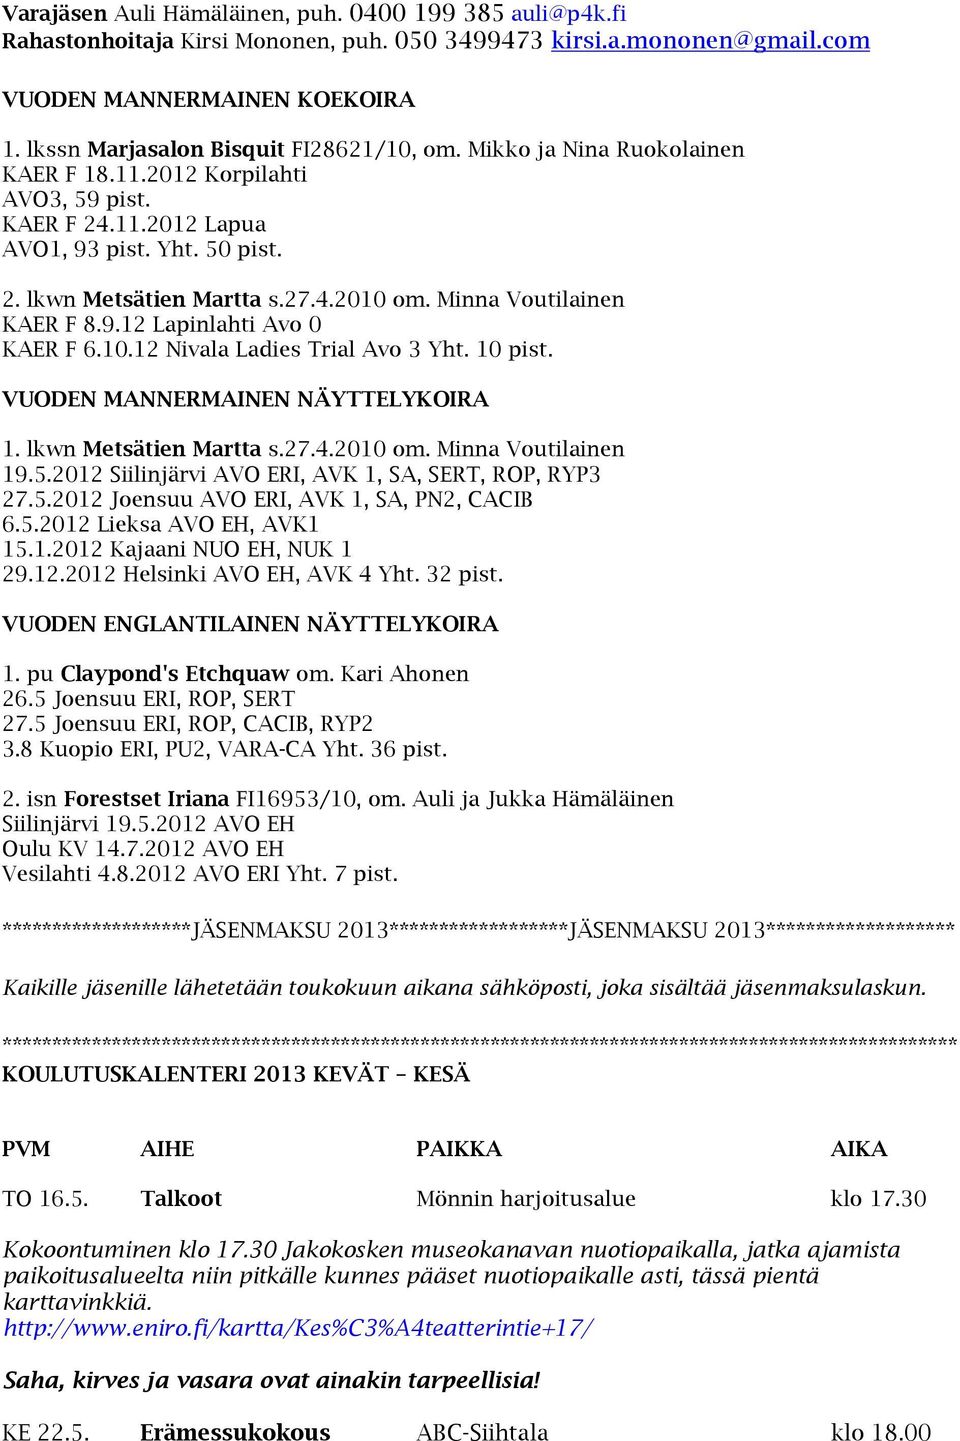 Minna Voutilainen KAER F 8.9.12 Lapinlahti Avo 0 KAER F 6.10.12 Nivala Ladies Trial Avo 3 Yht. 10 pist. VUODEN MANNERMAINEN NÄYTTELYKOIRA 1. lkwn Metsätien Martta s.27.4.2010 om. Minna Voutilainen 19.